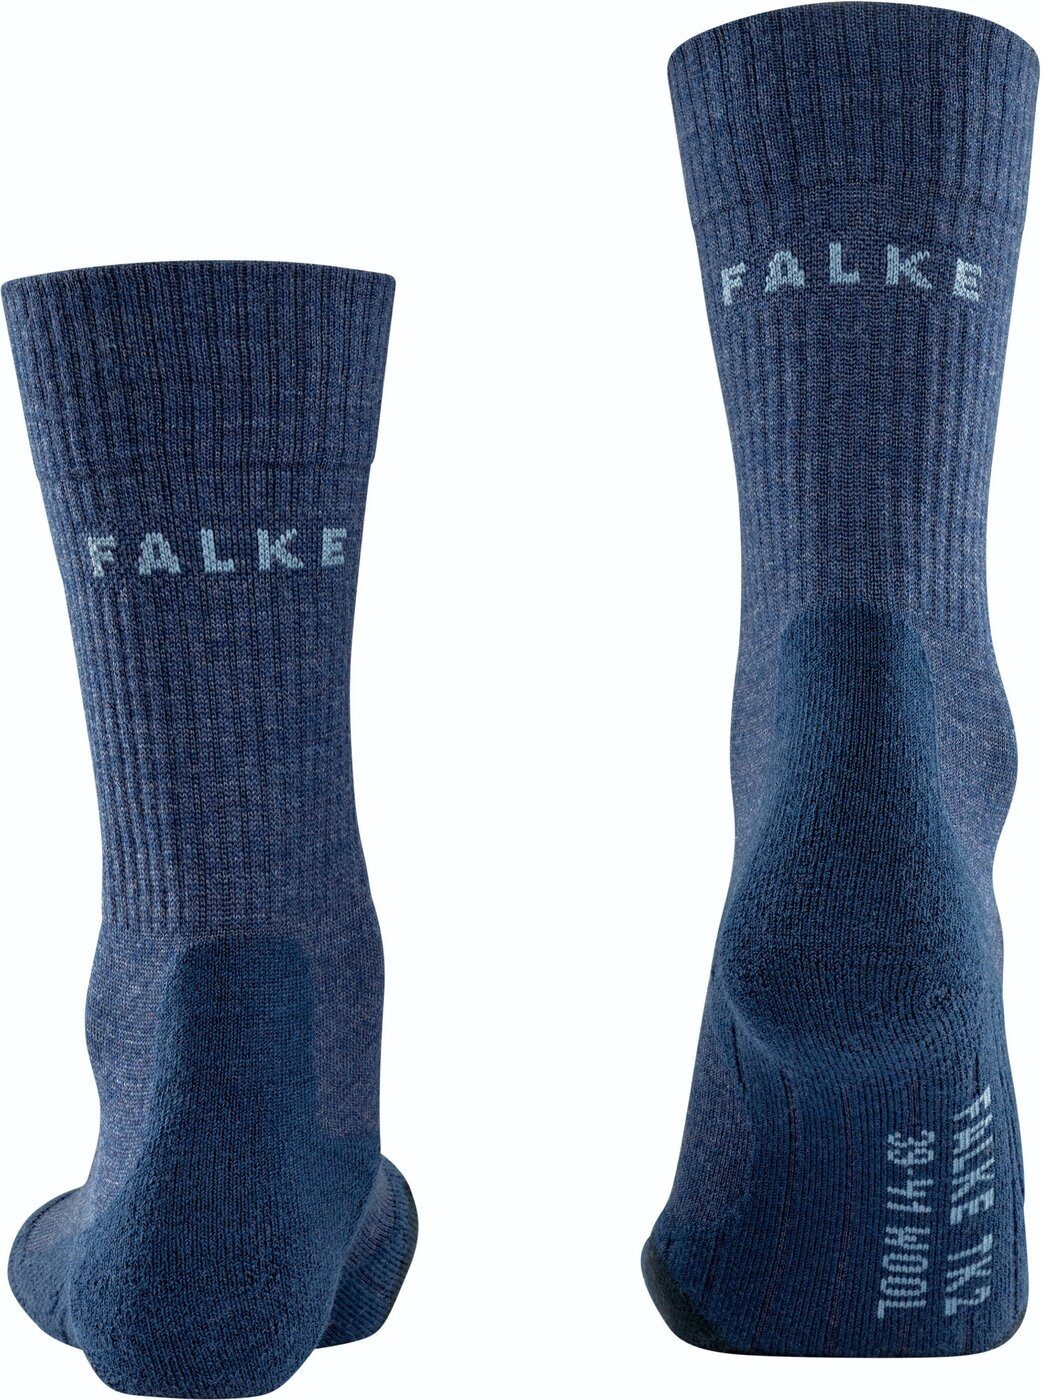 FALKE Funktionssocken FALKE TK2 Wool jeans 6670